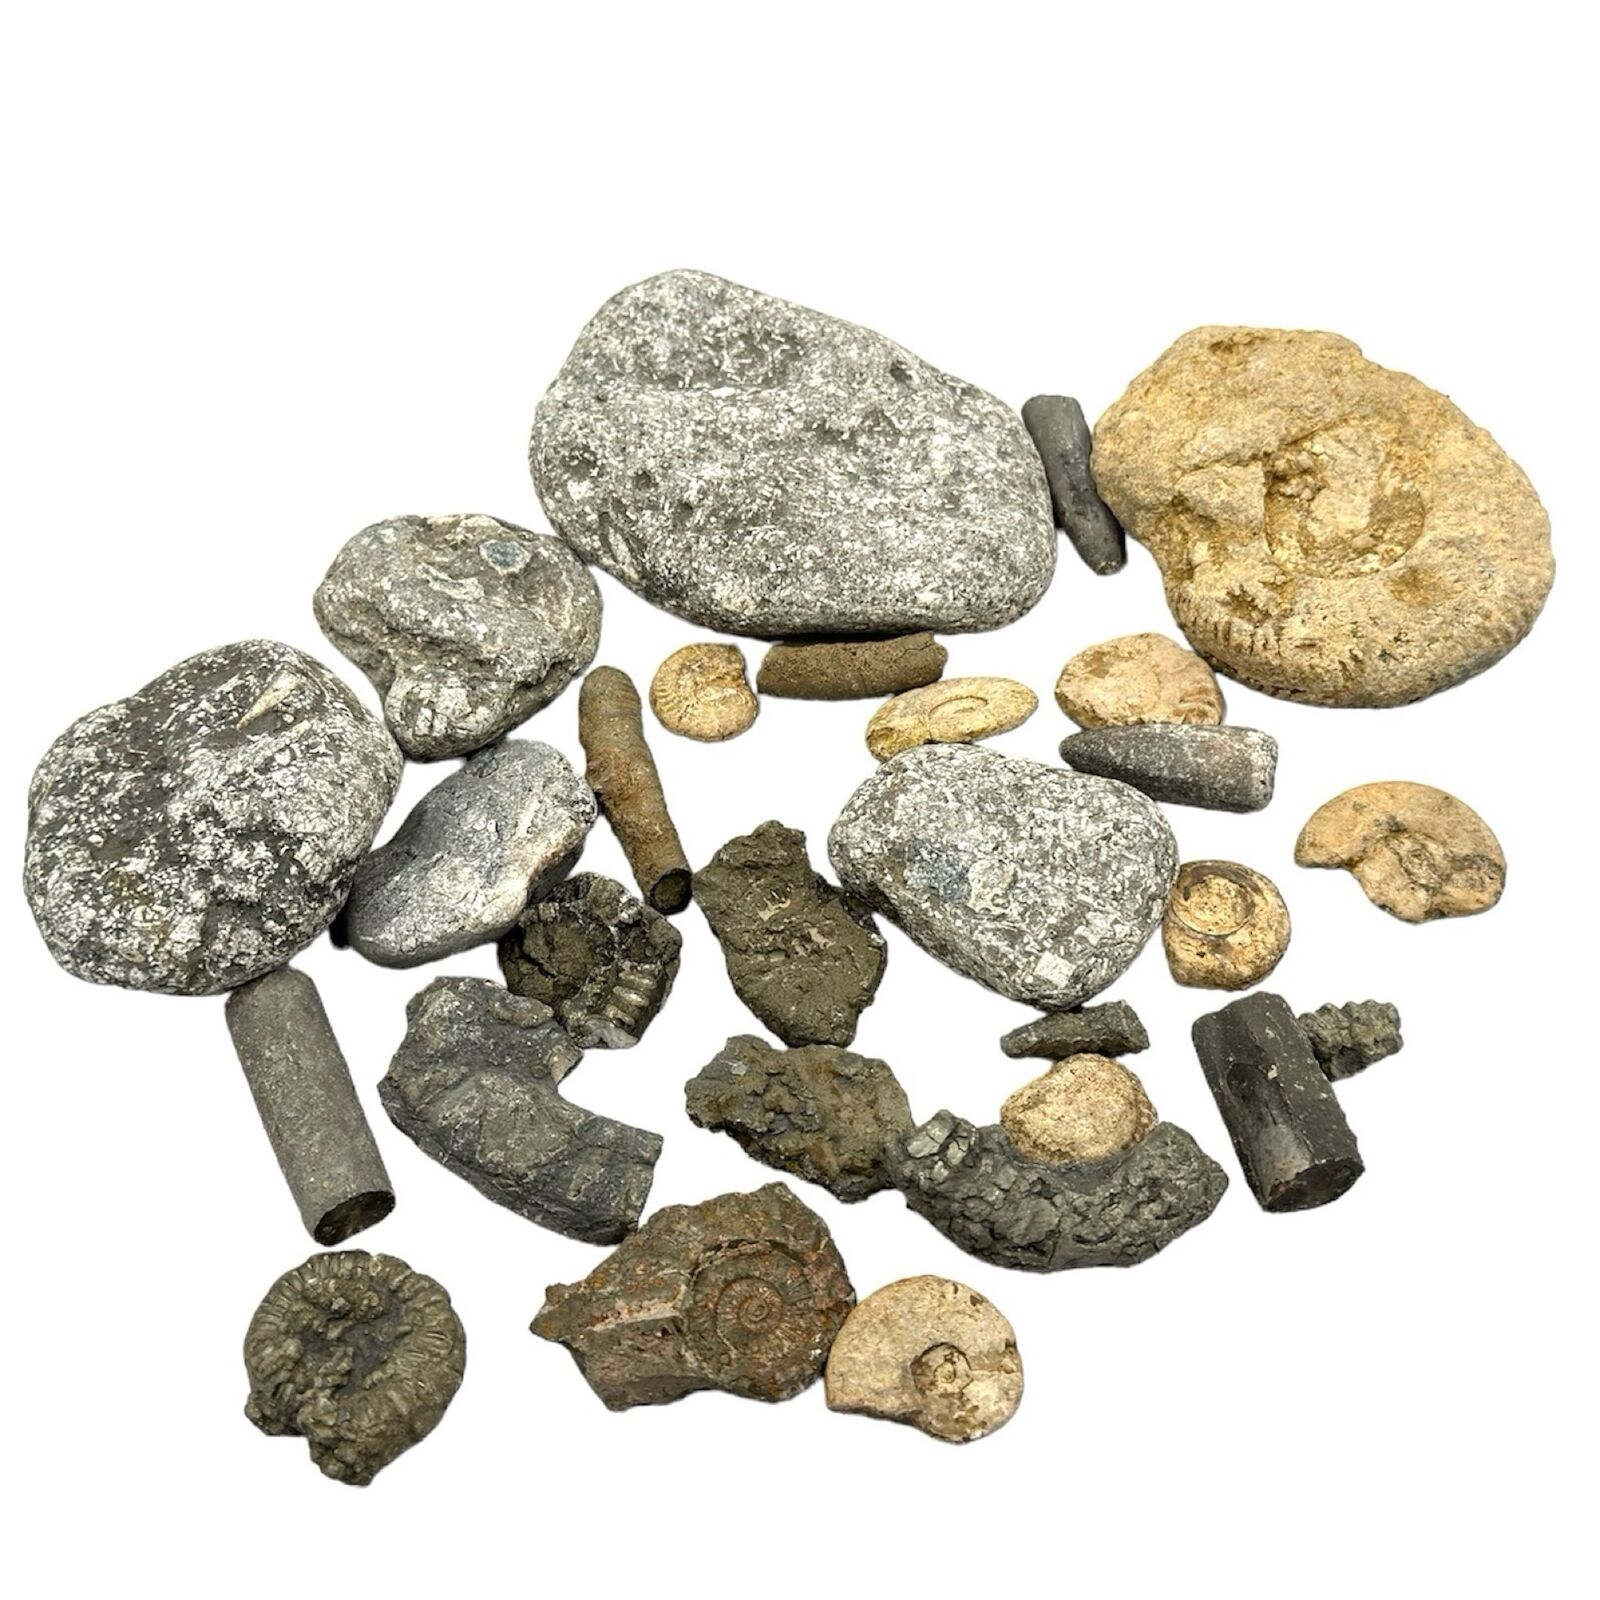 1kg Bulk Jurassic Coast 28 x Fossils Budget Mix - Dorset - LOT - Genuine